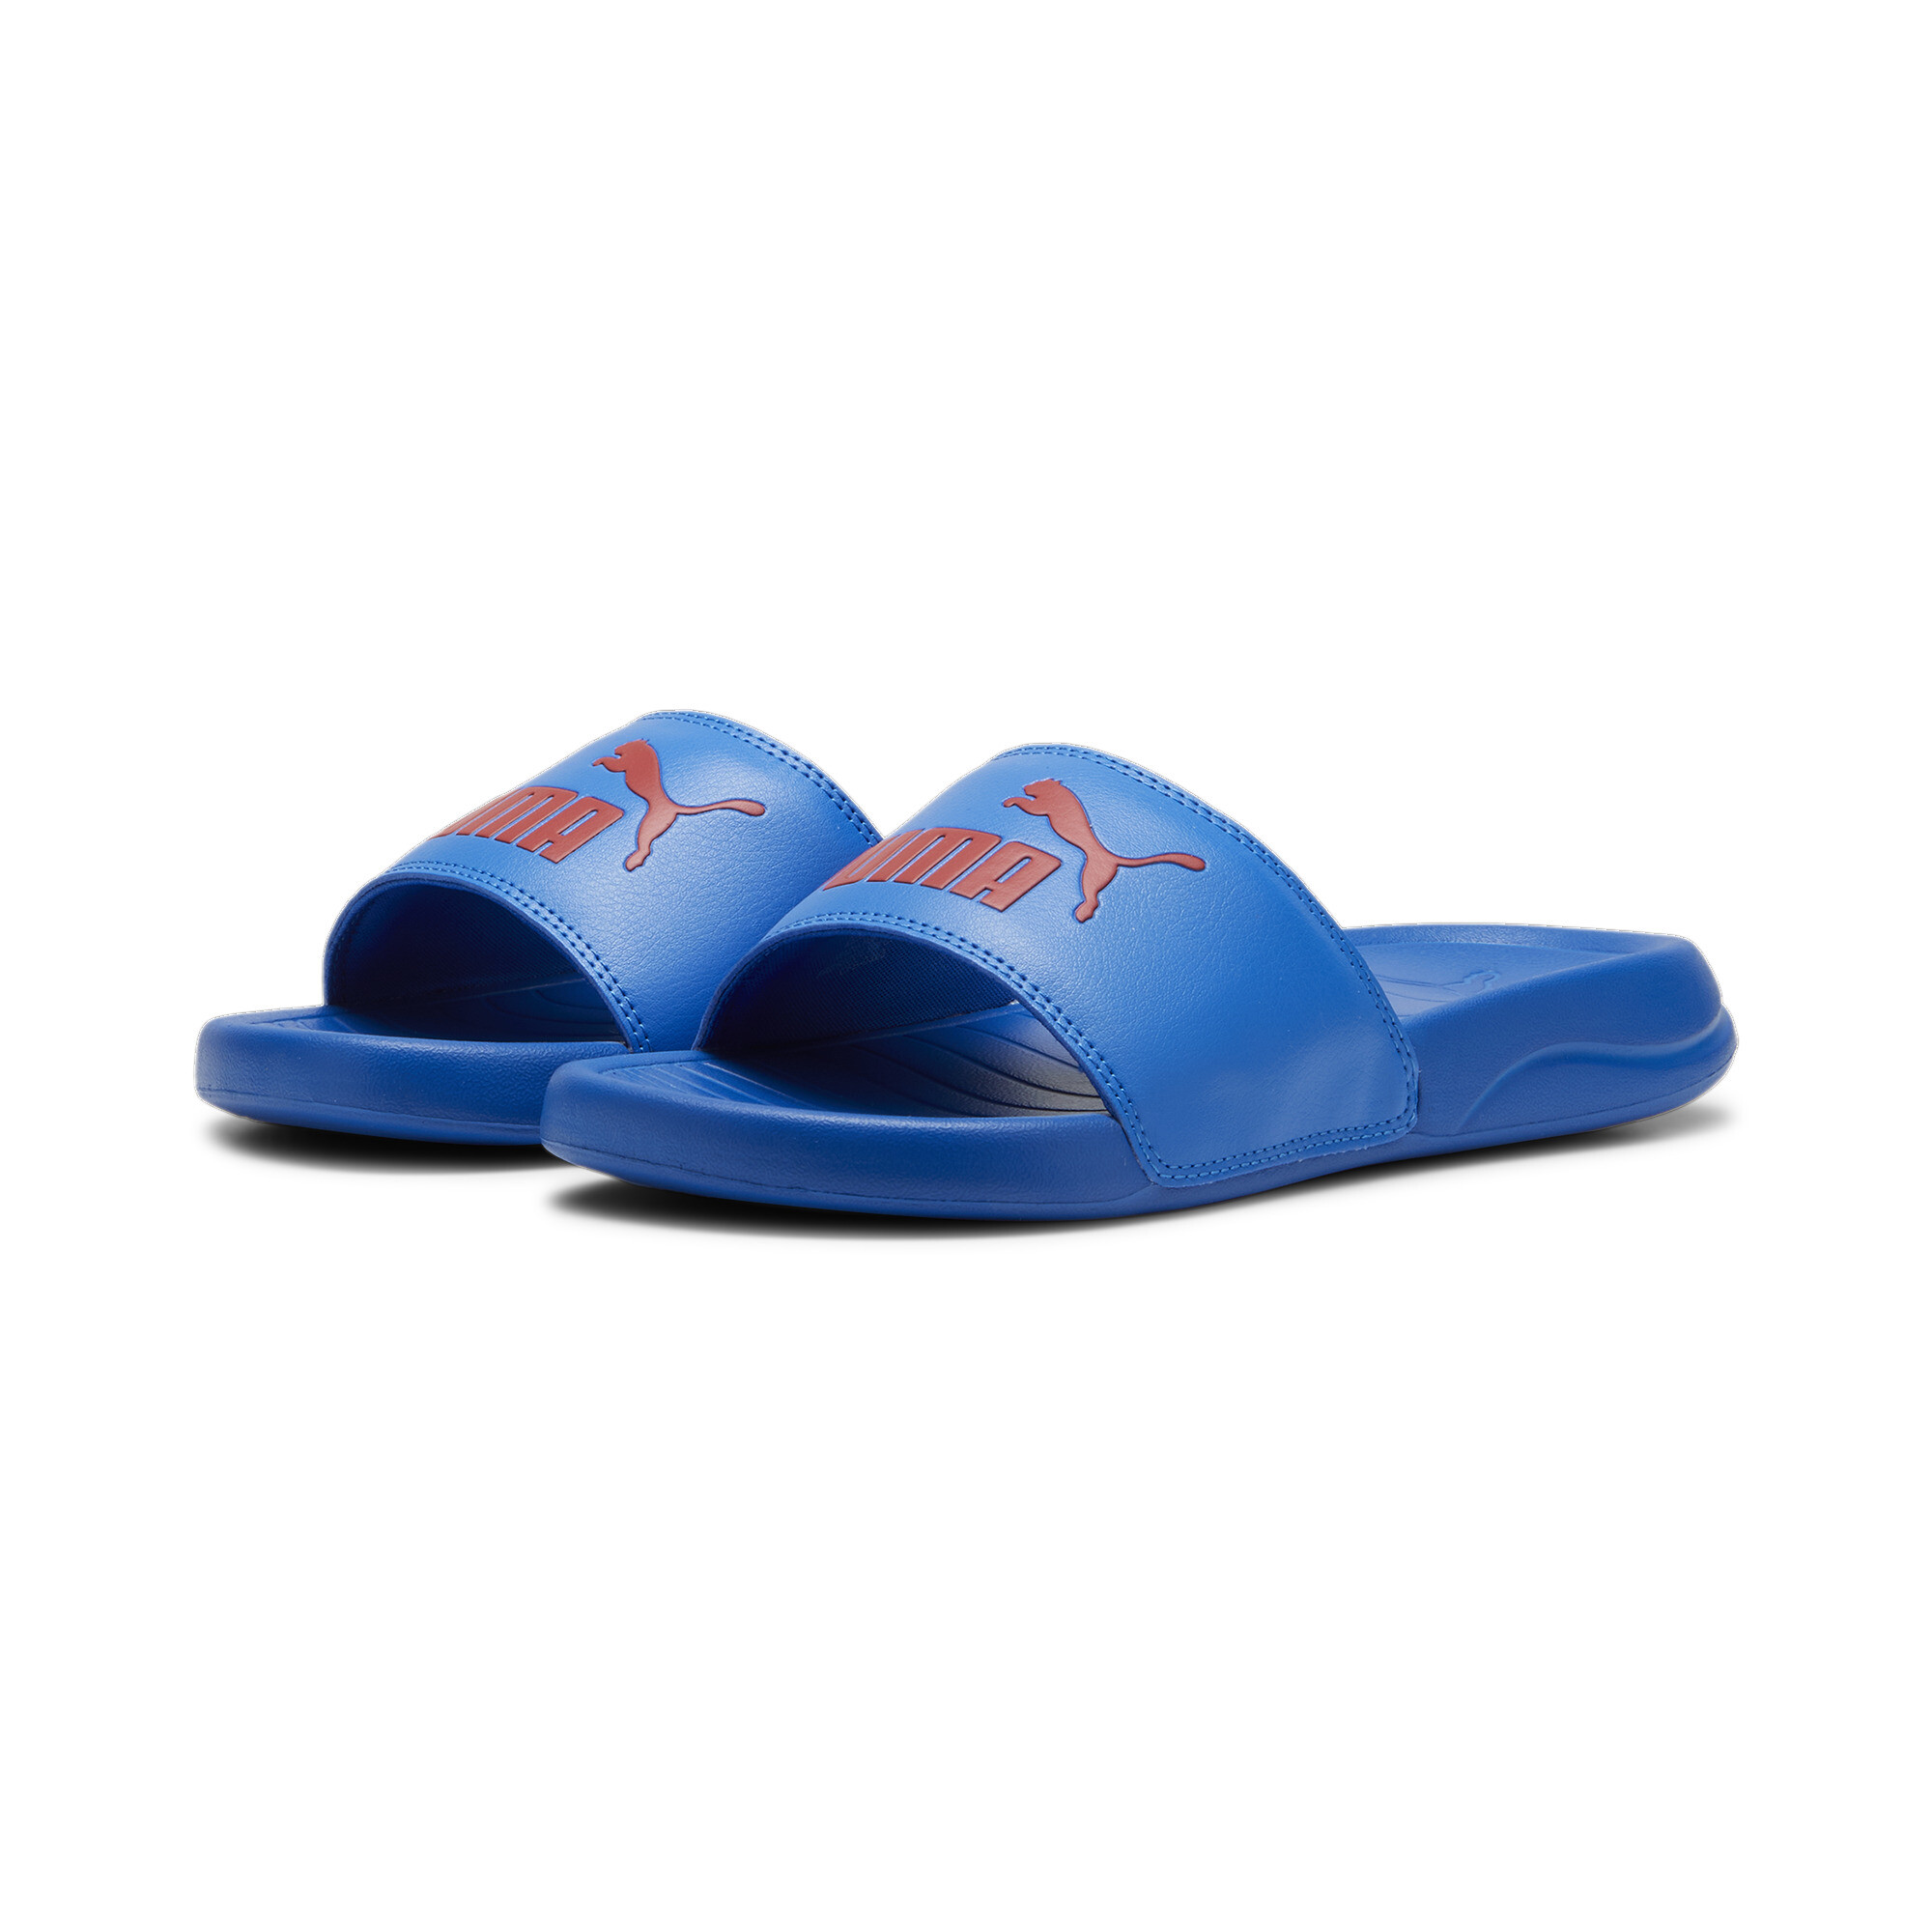 PUMA Popcat 20 Youth Sandals In Blue, Size EU 38